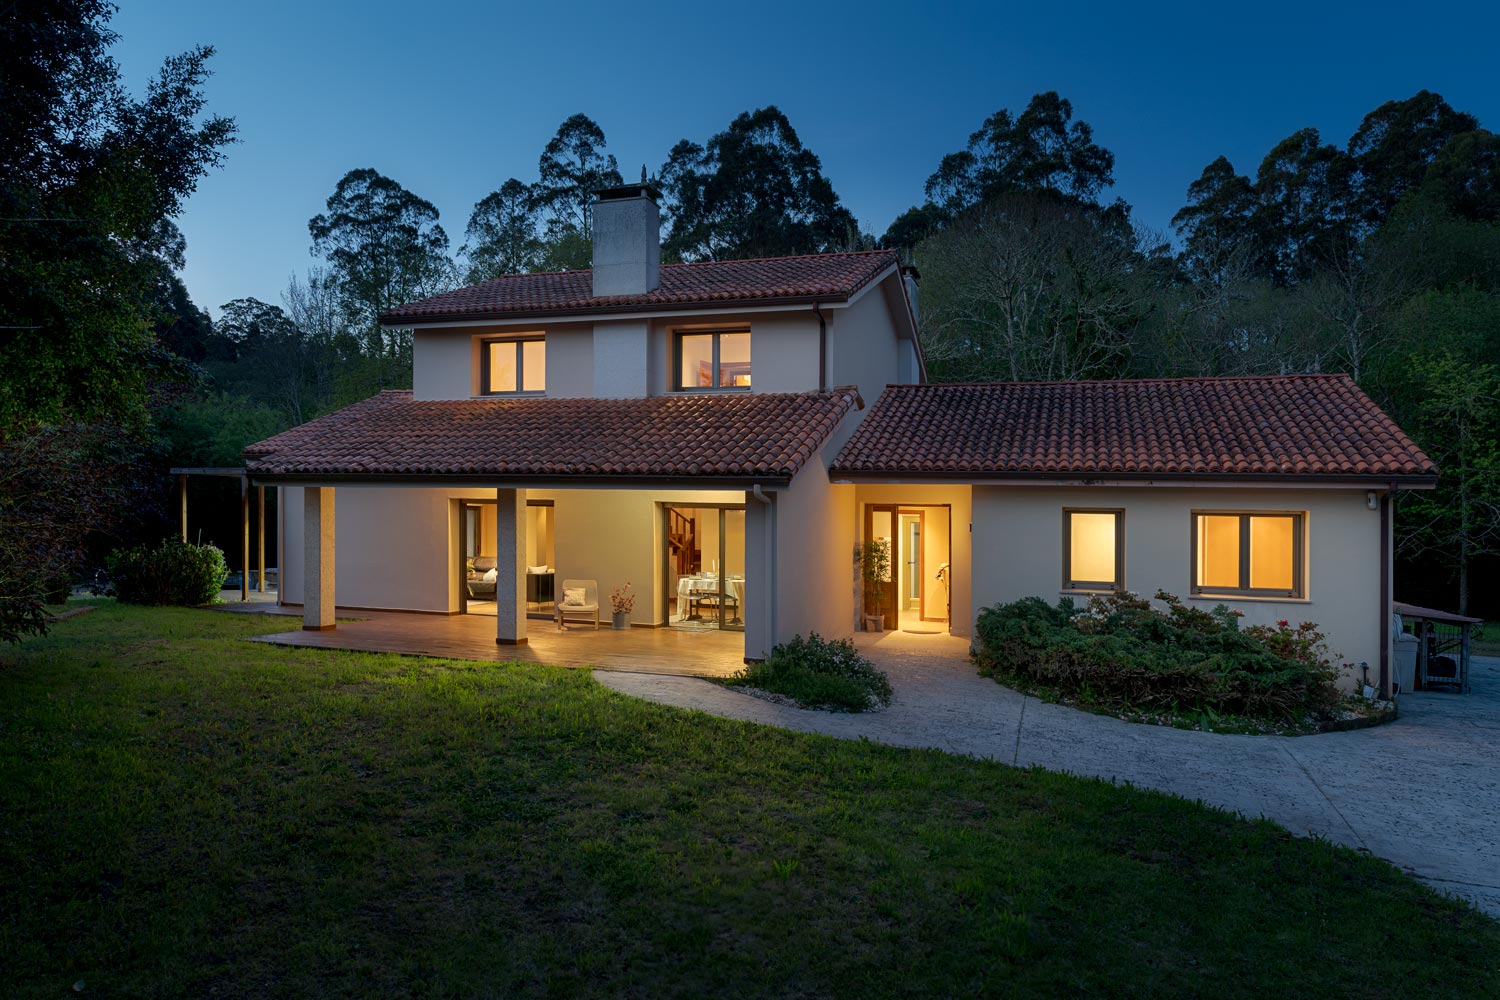 Acogedora casa unifamiliar iluminada al atardecer con techo de tejas, rodeada de un jardín verde y árboles, mostrando una sensación de hogar y tranquilidad en un entorno natural.